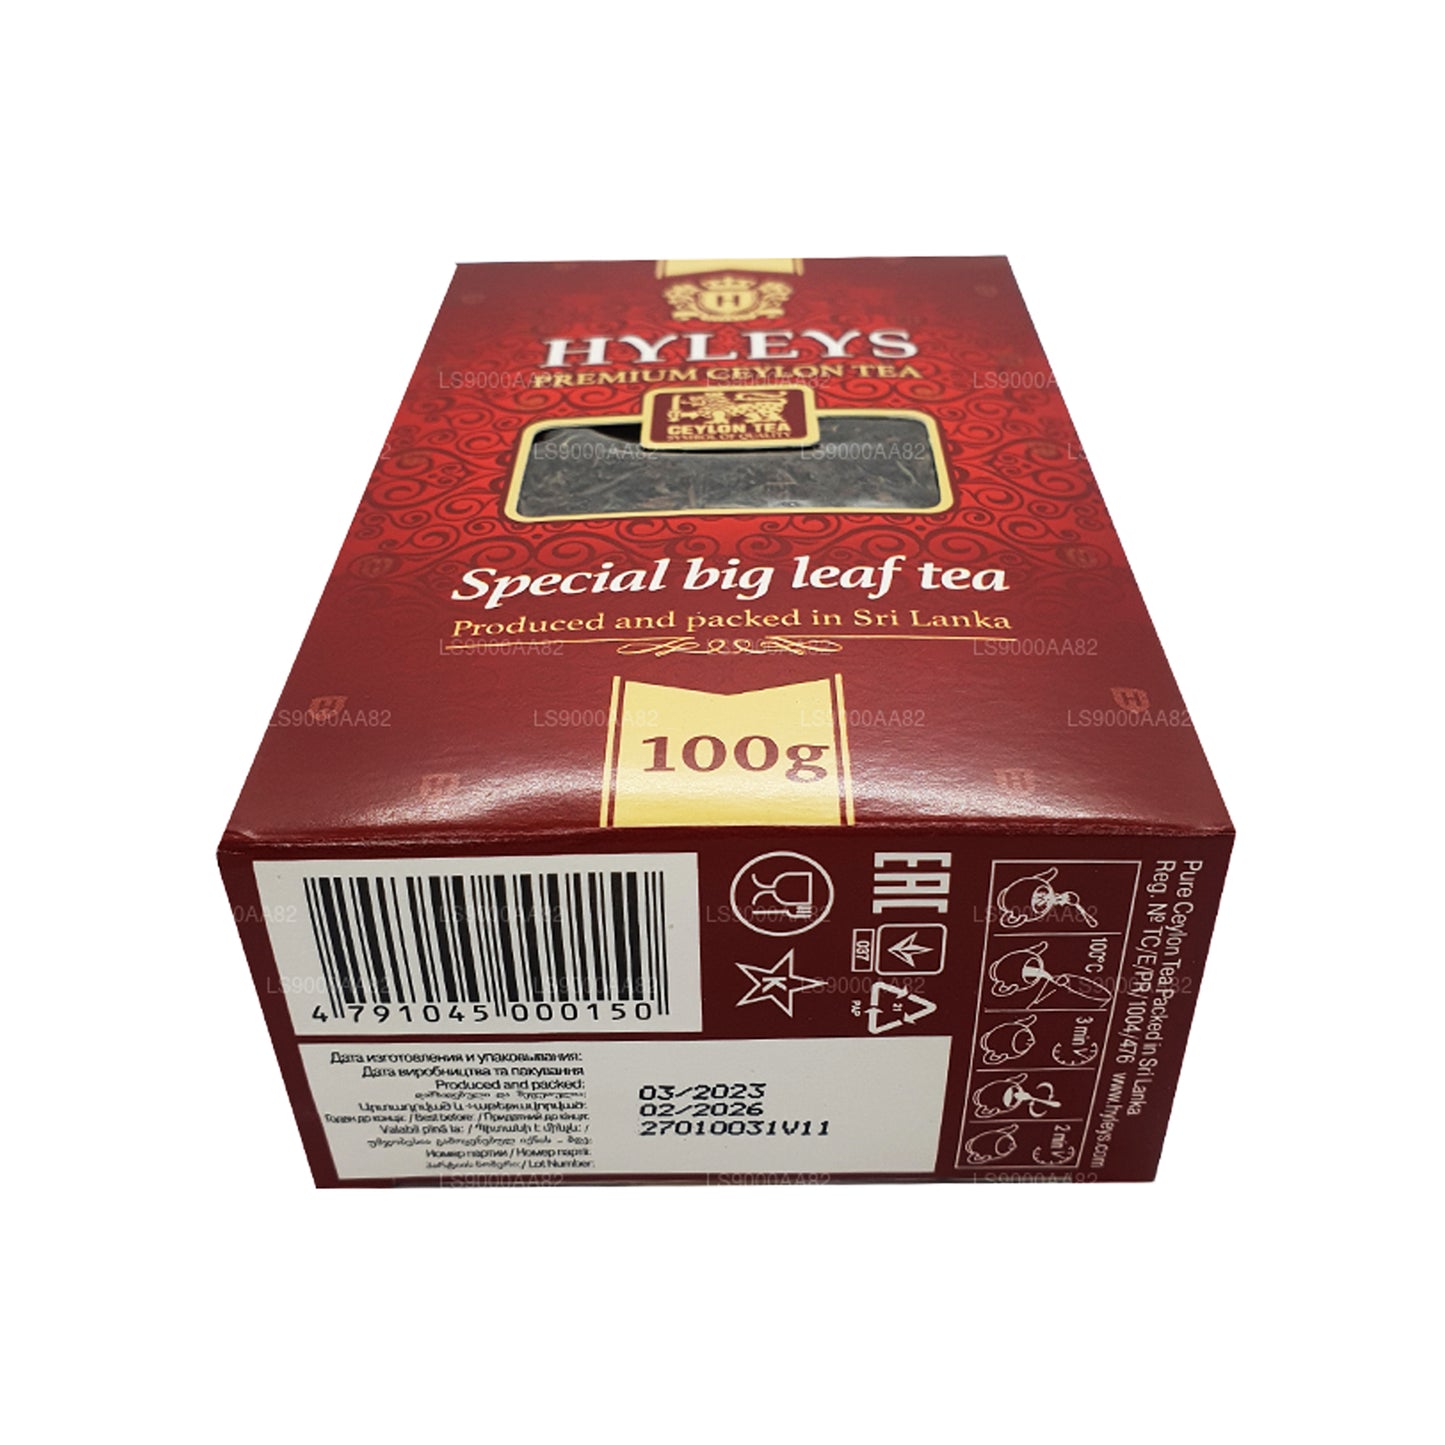 HYLEYS 特制大叶茶 (100g)